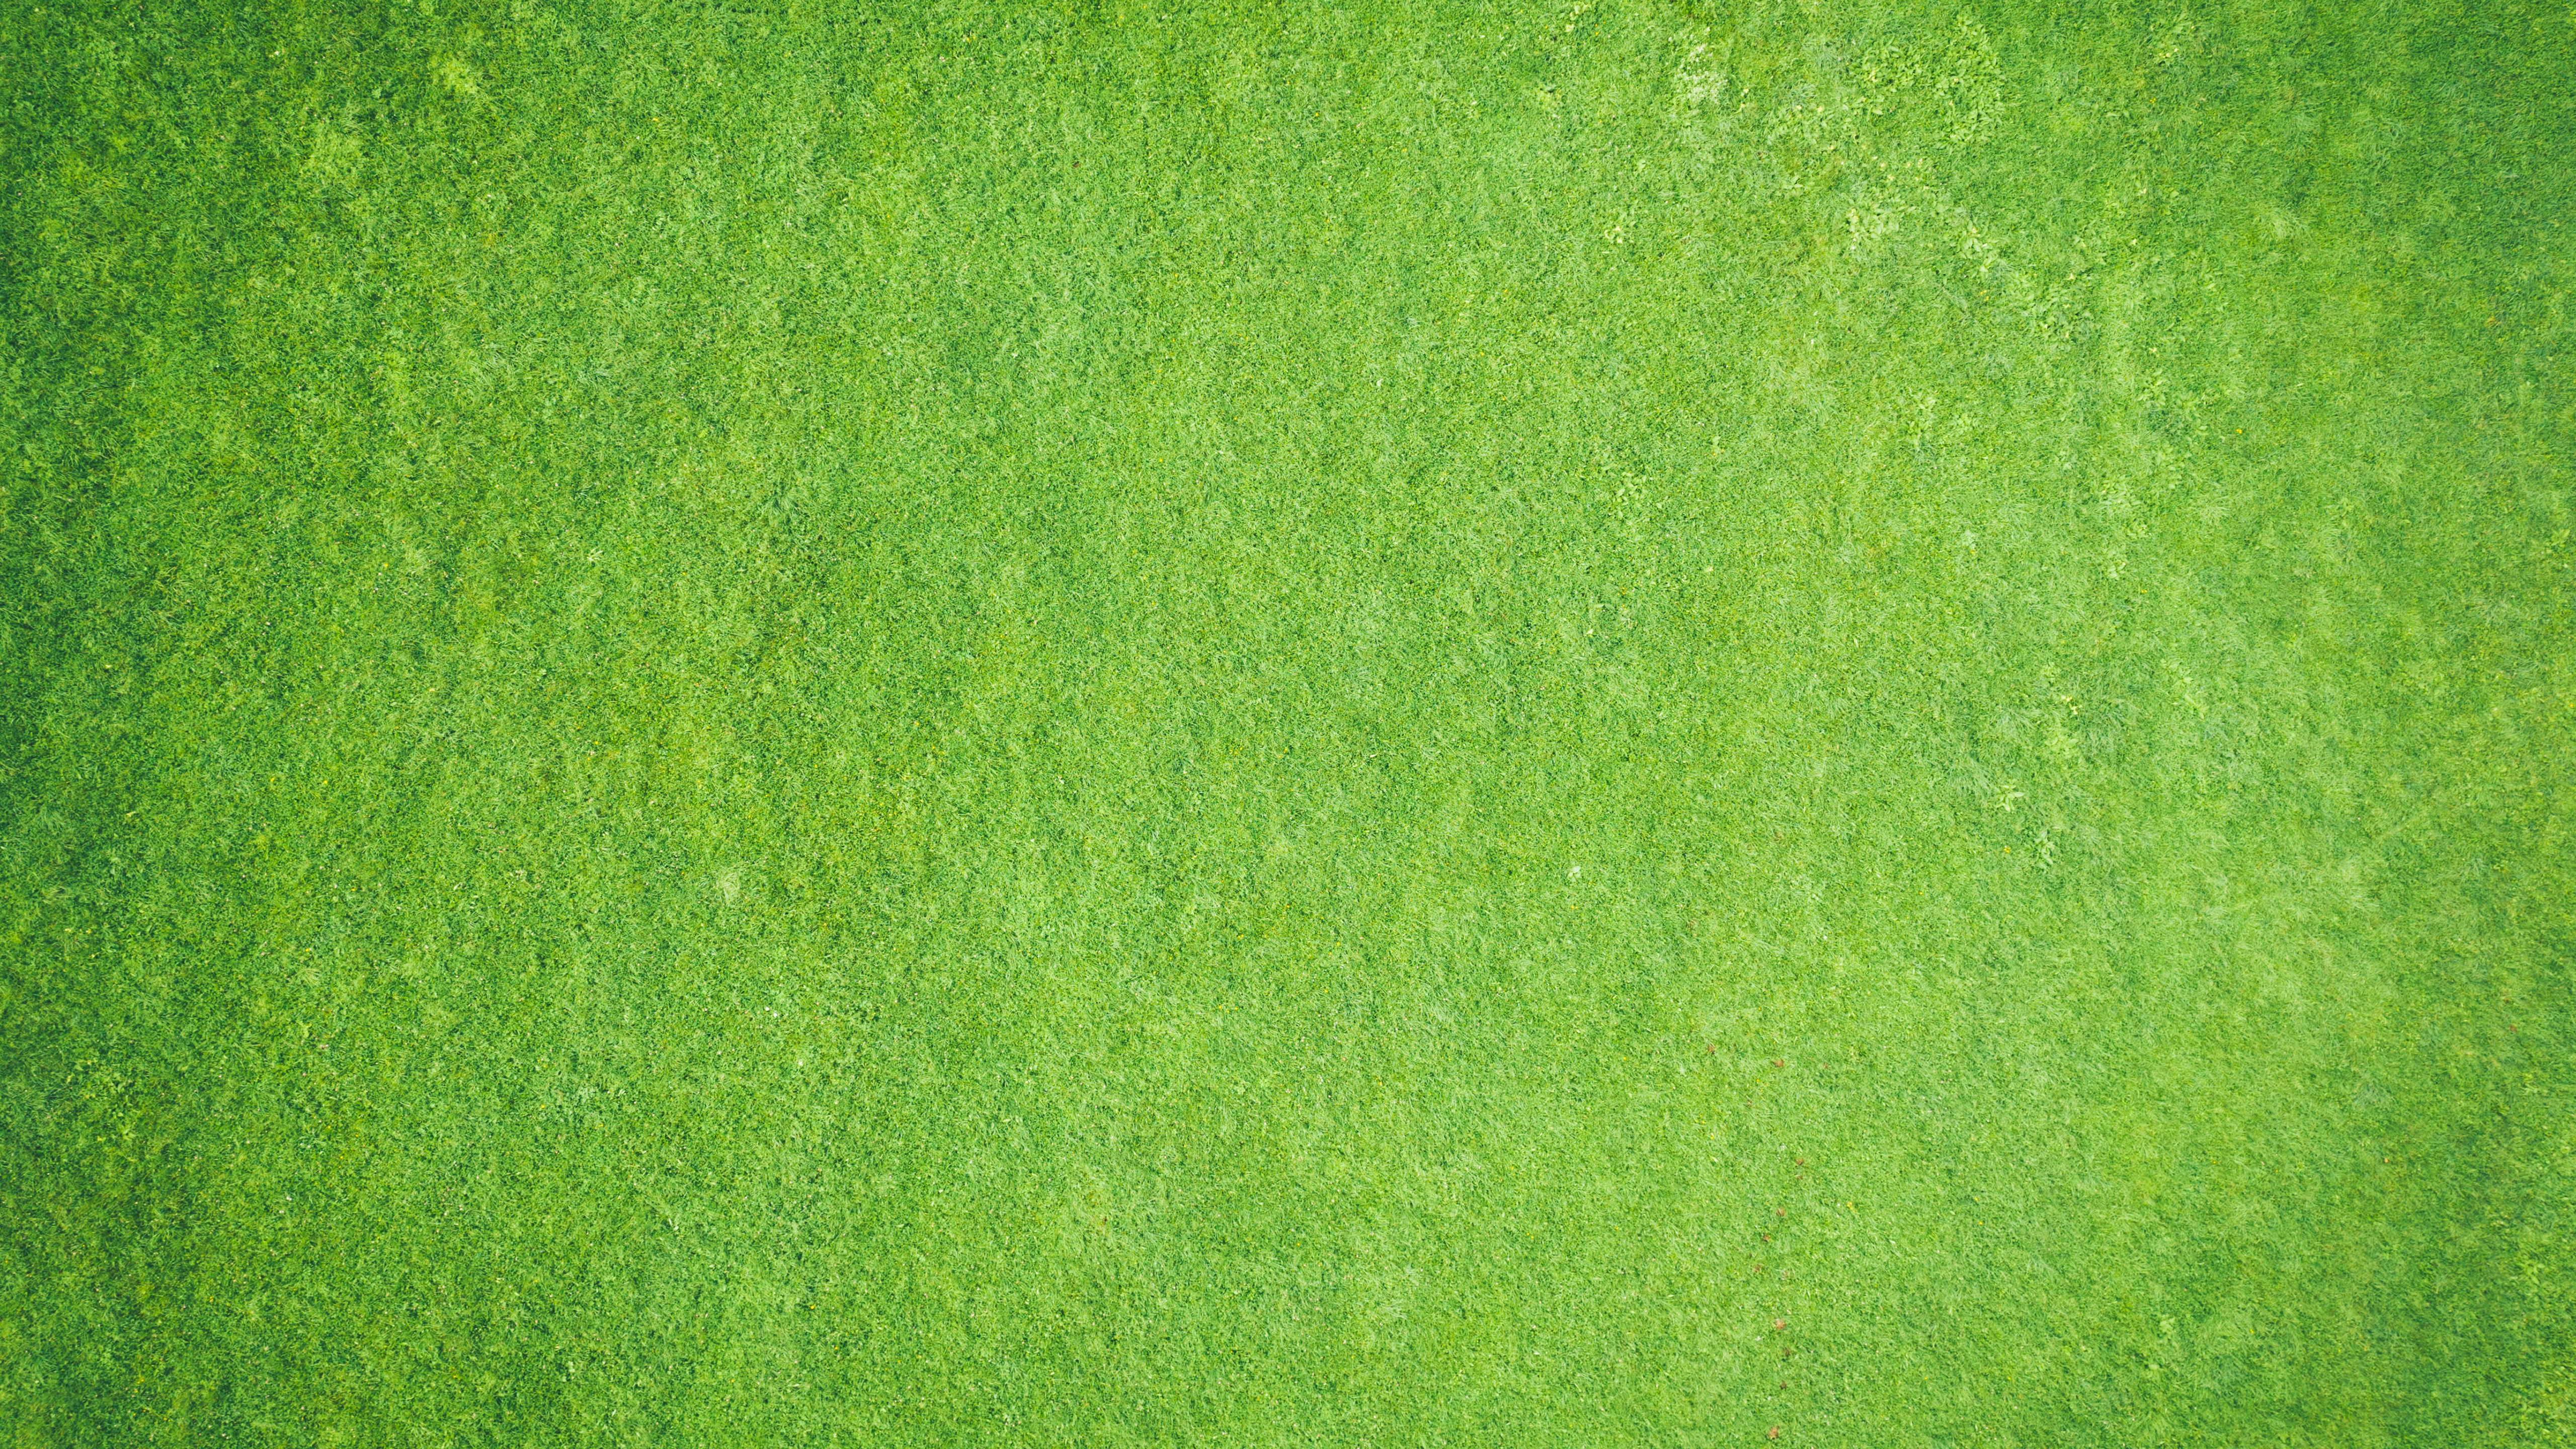 Wallpapers grass textures green on the desktop